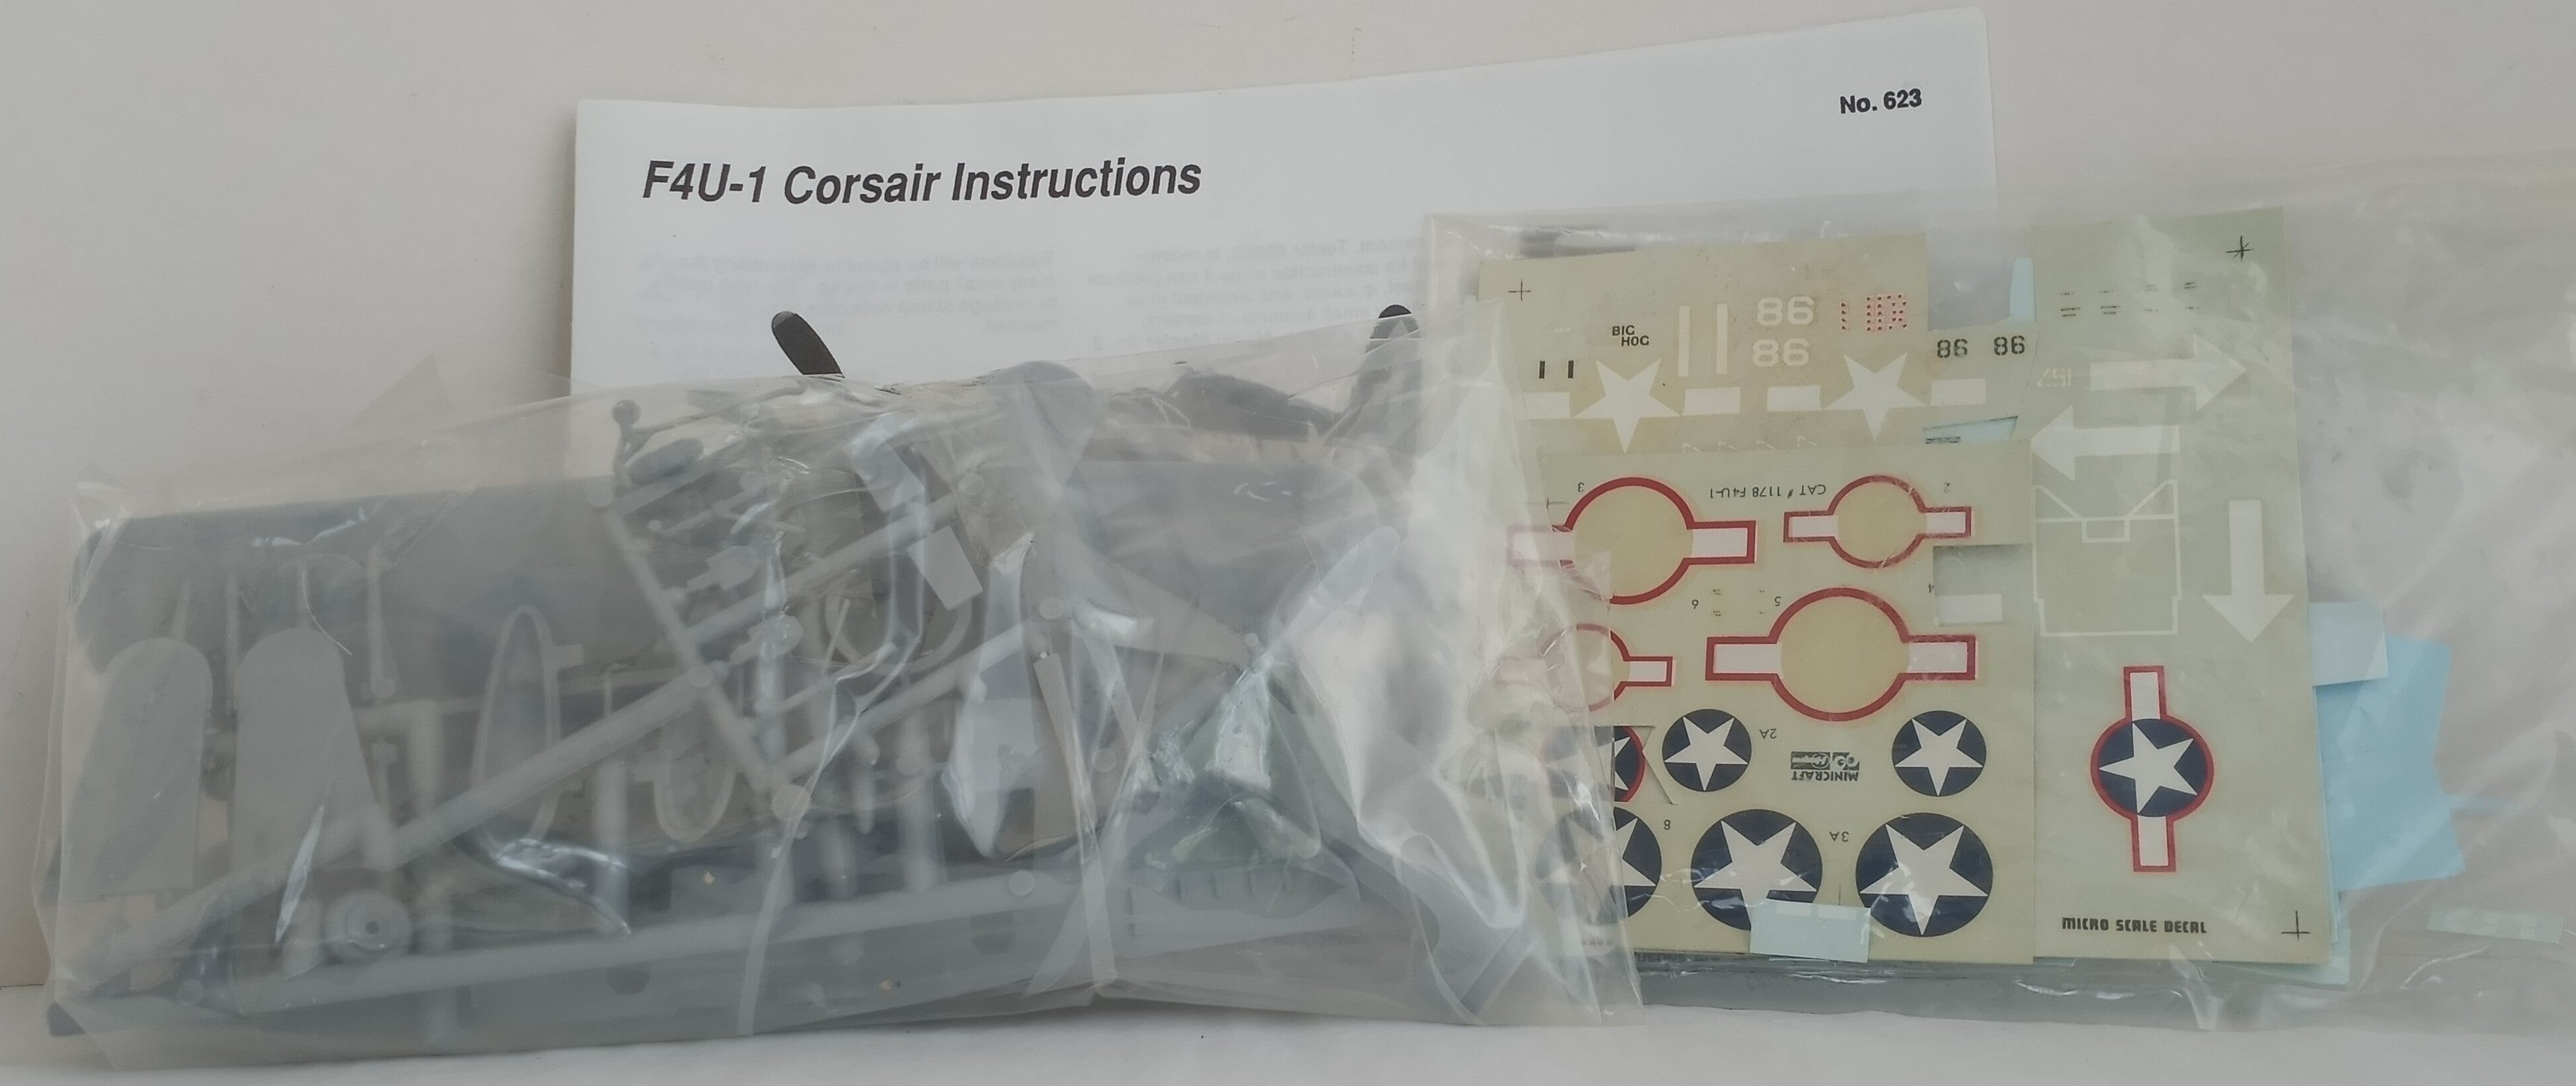 1:72 F4U-1 Corsair Kit